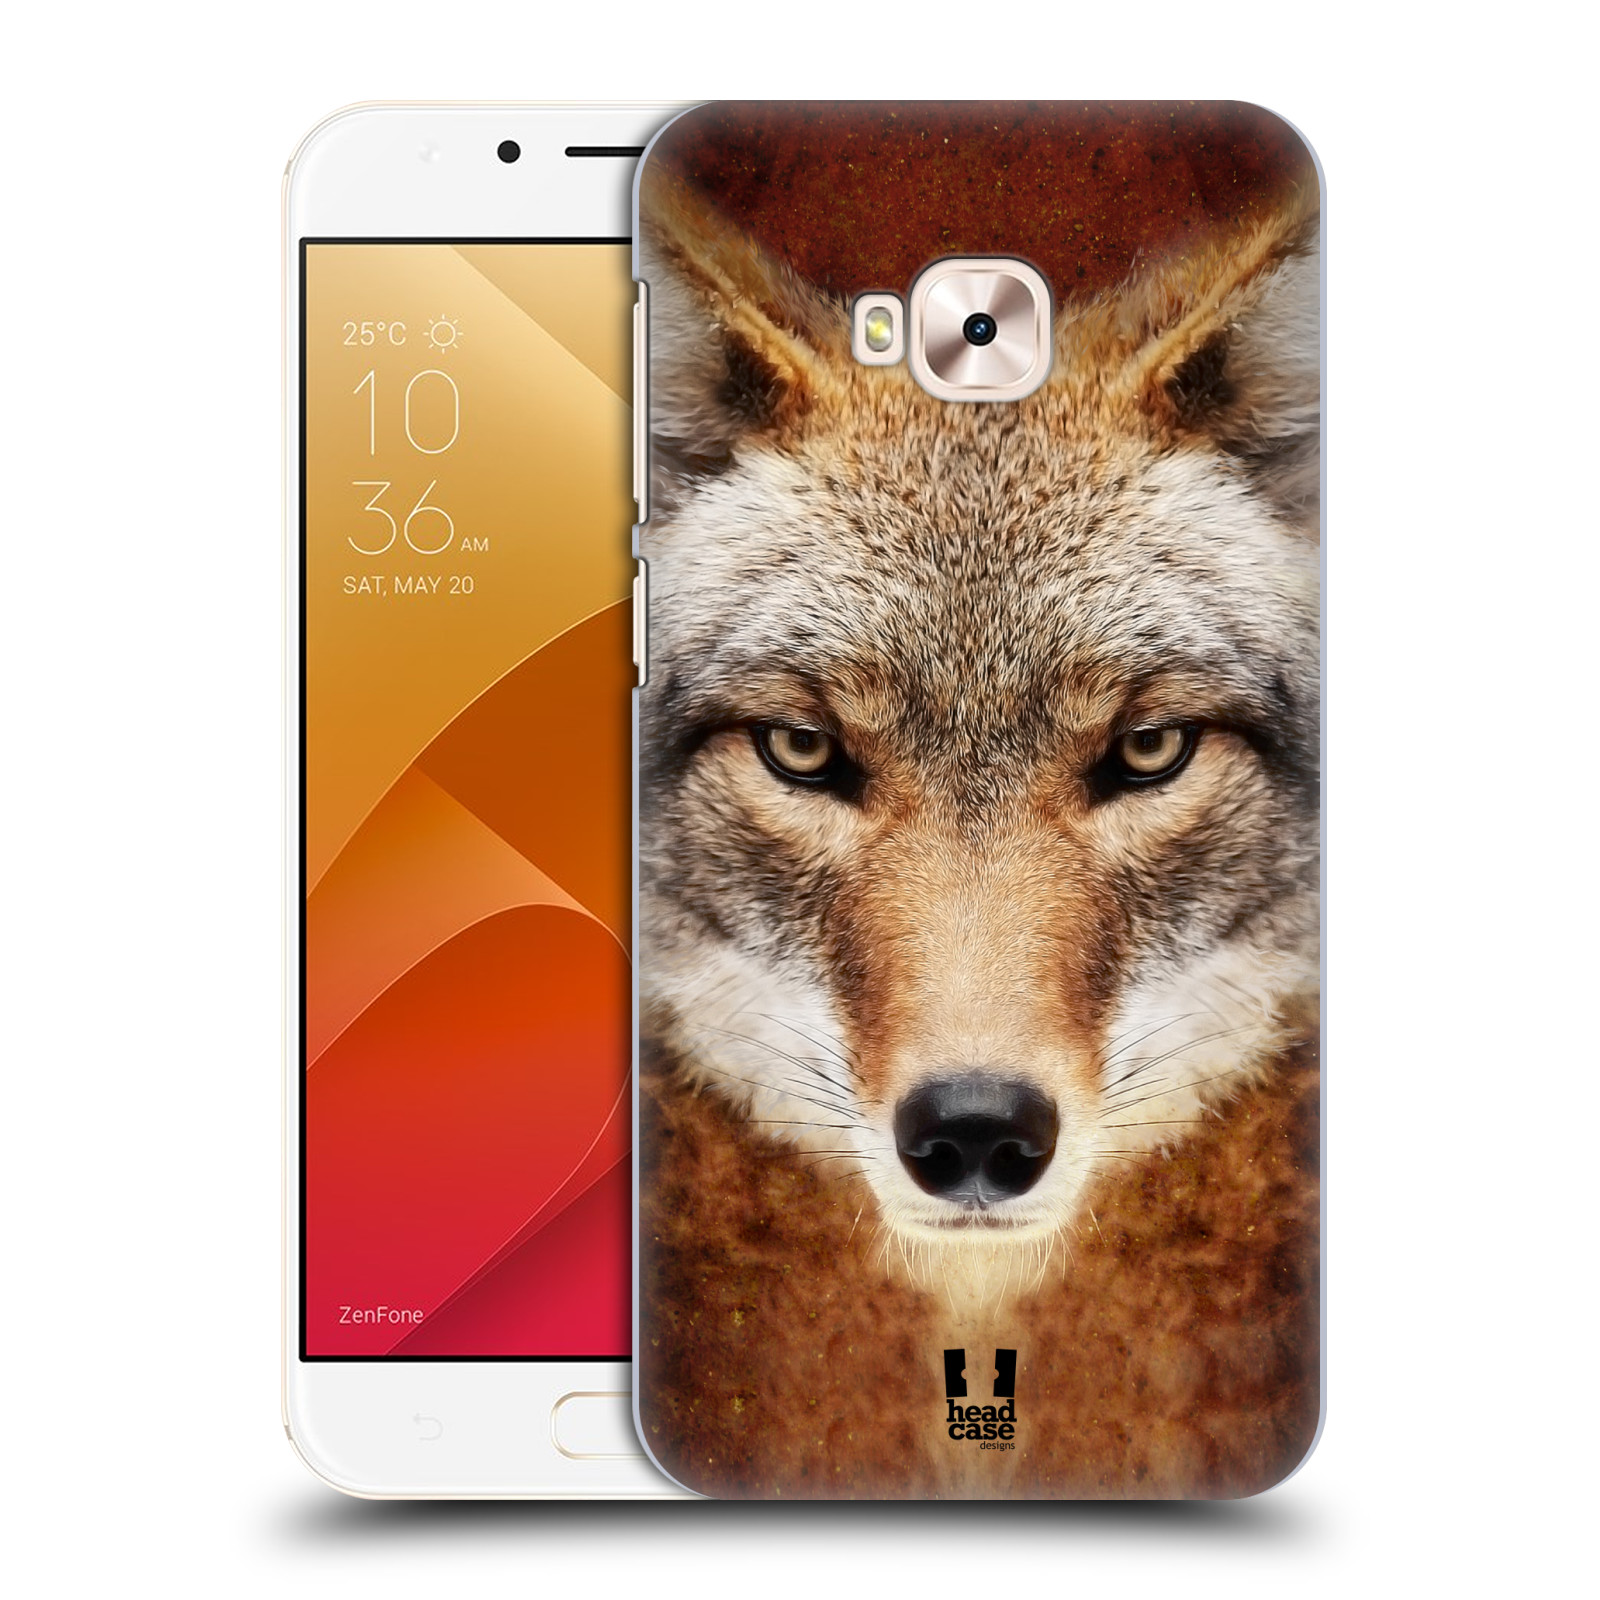 HEAD CASE plastový obal na mobil Asus Zenfone 4 Selfie Pro ZD552KL vzor Zvířecí tváře kojot